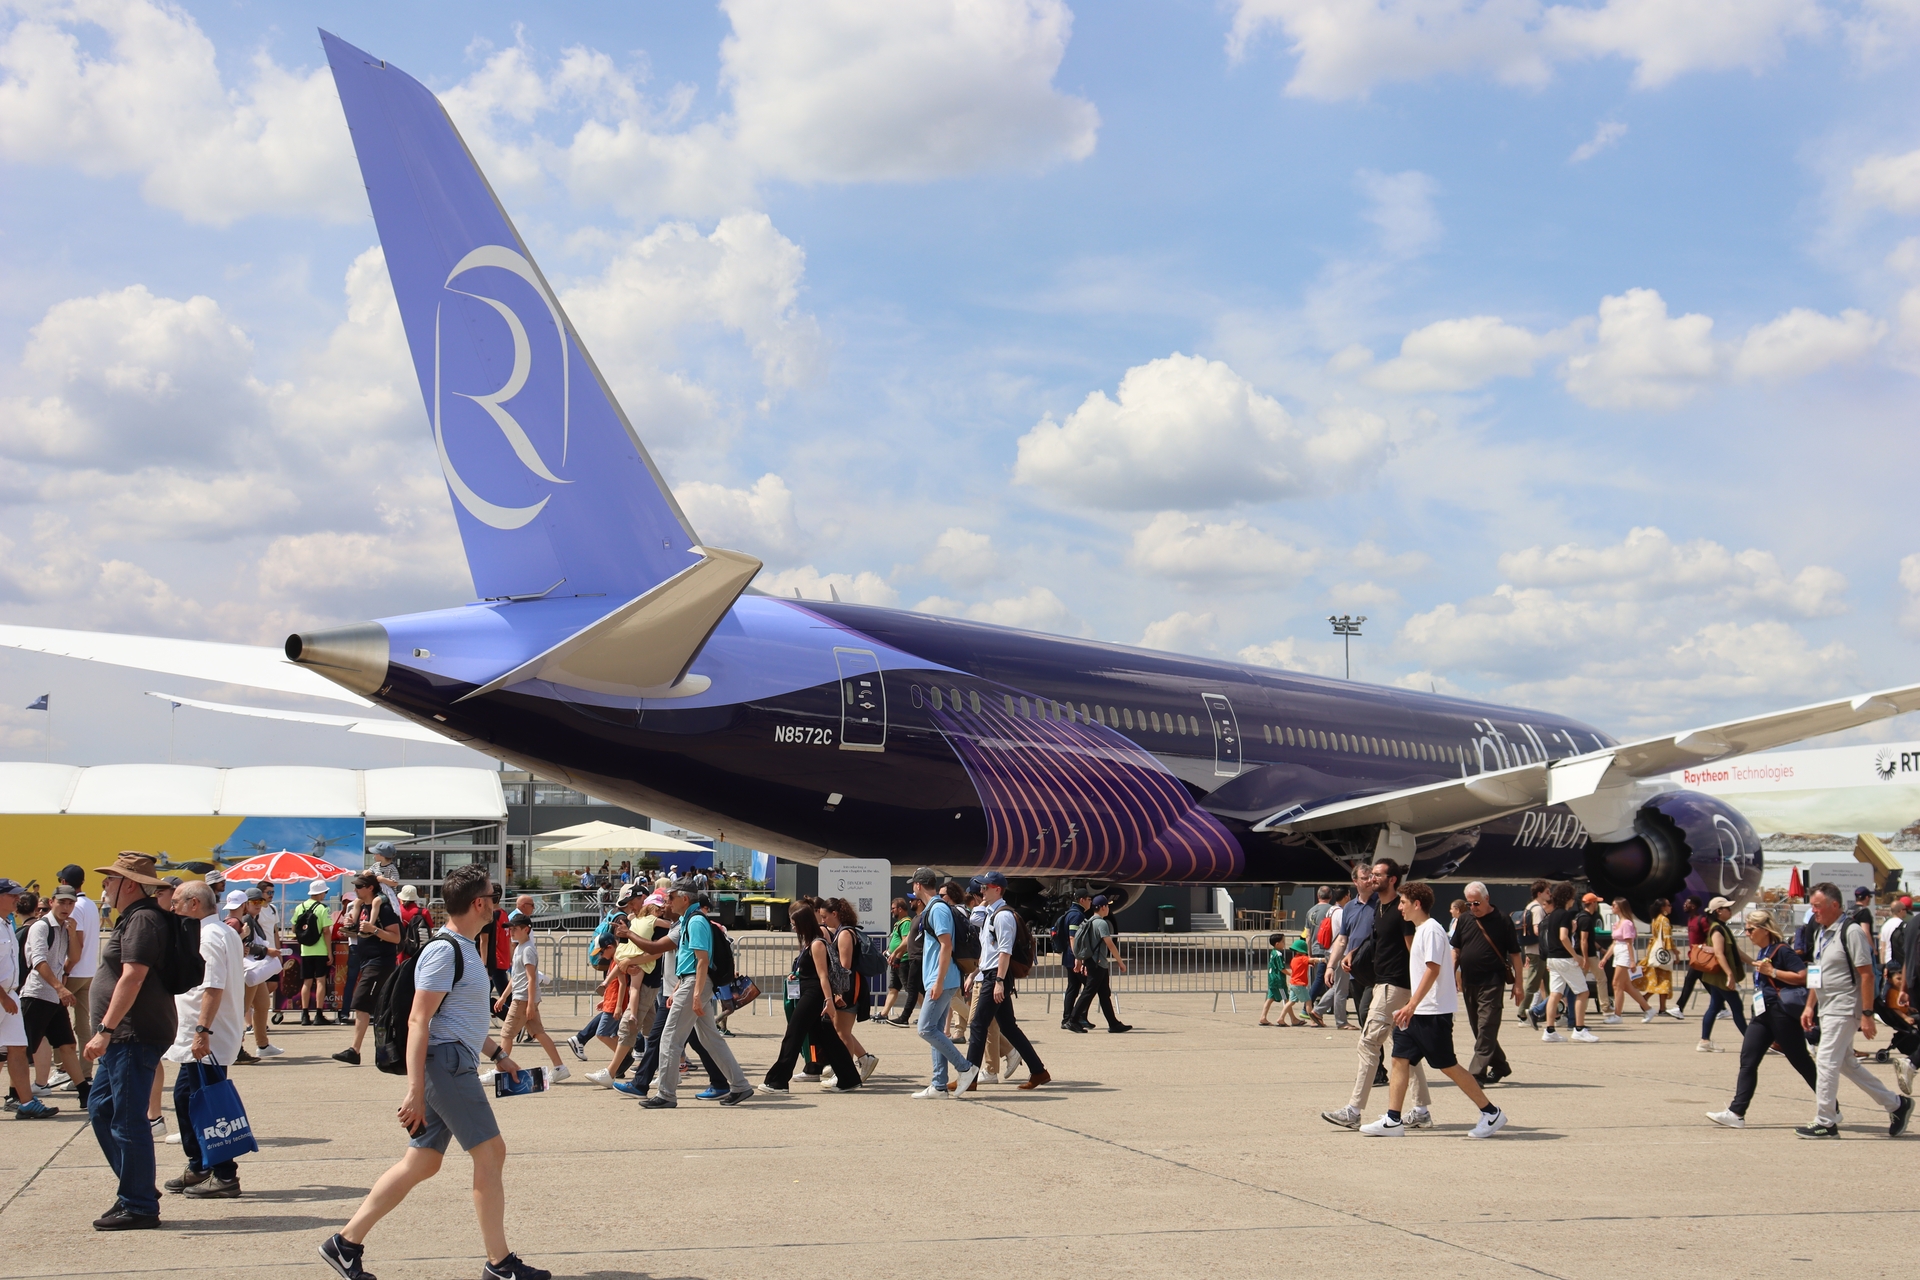 Az Airbus egyetlen, de állandó és kíméletlen riválisa, a Boeing a Riyadh Air színeiben egy 787-9 Dreamlinert is kiállított – a tervek szerint ez a cég lesz Szaúd-Arábia légiközlekedésének másik zászlóshajója; 2030-ra már száz célállomásra kívánnak repülni a legmodernebb gépekkel. A cég harminckilenc példányt rendelt a 787-9 típusból, további harminchárom pedig opciós. A képen látható példány a Riyadh Air első – és eddig egyetlen – gépe, amit június 12-én vettek át. A légitársaság képviselői a légiszalon idején írták alá azt a megállapodást, aminek értelmében a gépeiket a GE Aerospace GEnx-1B típusú hajtóműveivel fogják ellátni